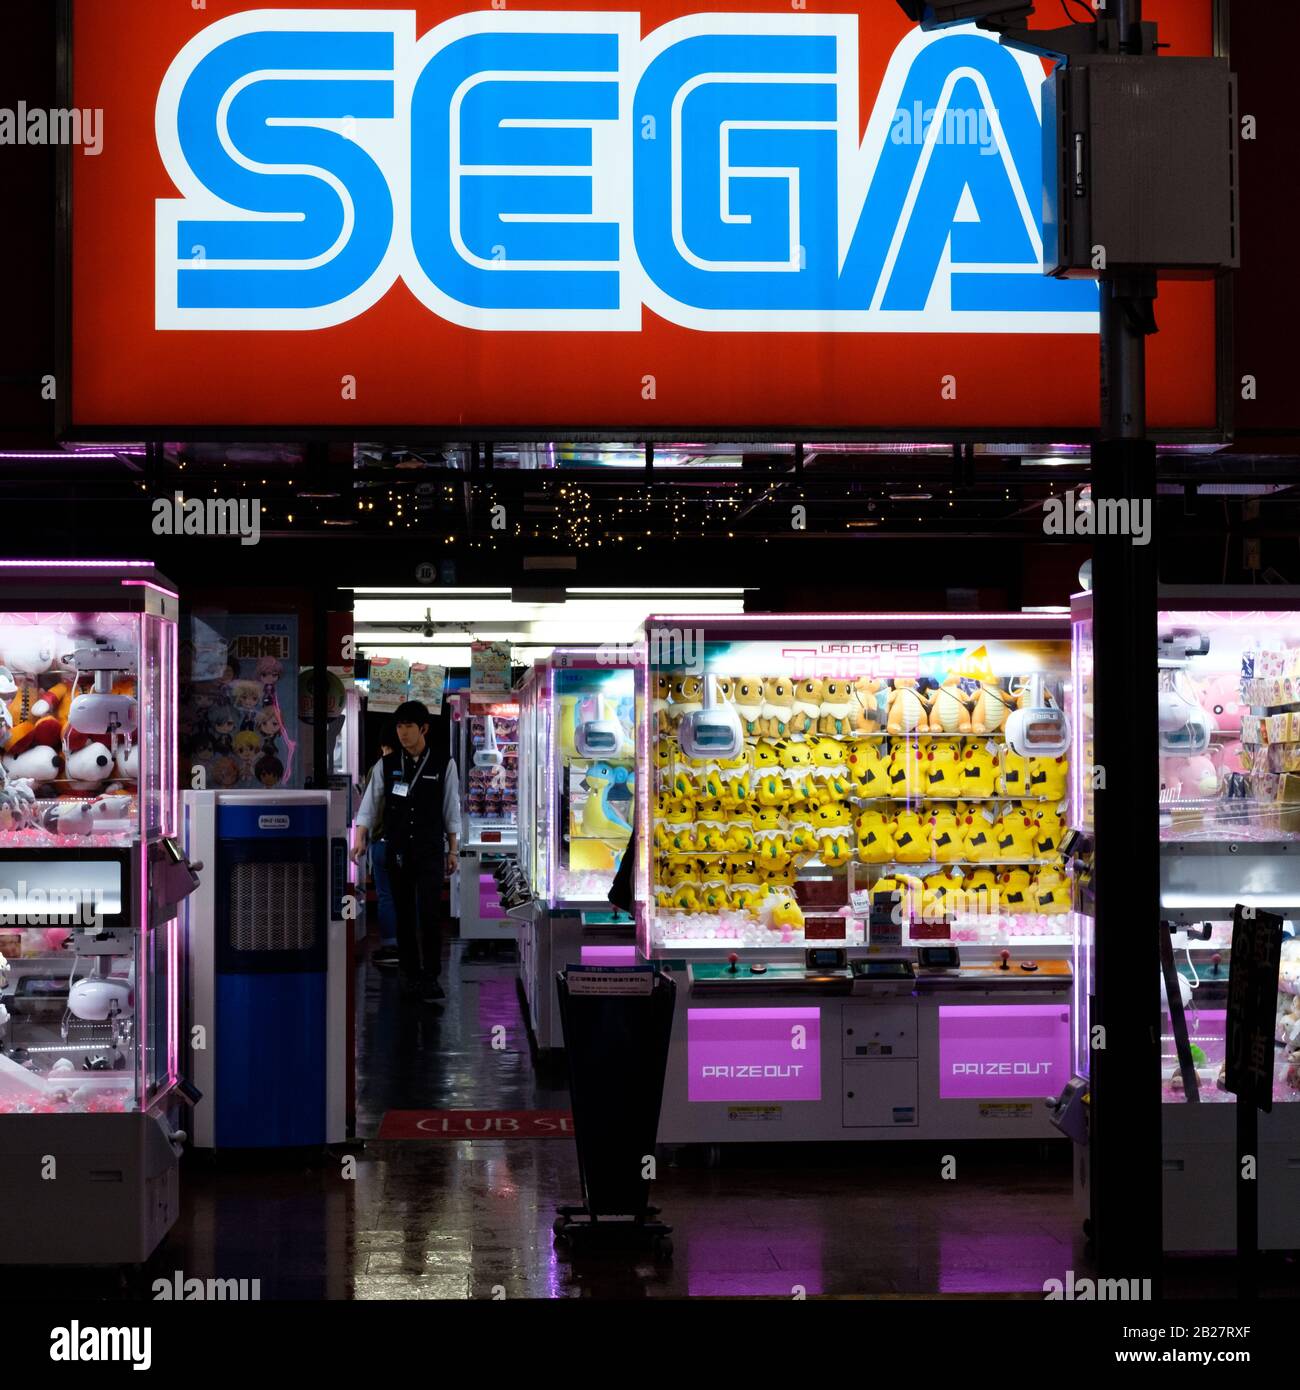 Signage at a Sega gaming arcade on a rainy night in Shinjuku, Tokyo, Japan. Stock Photo